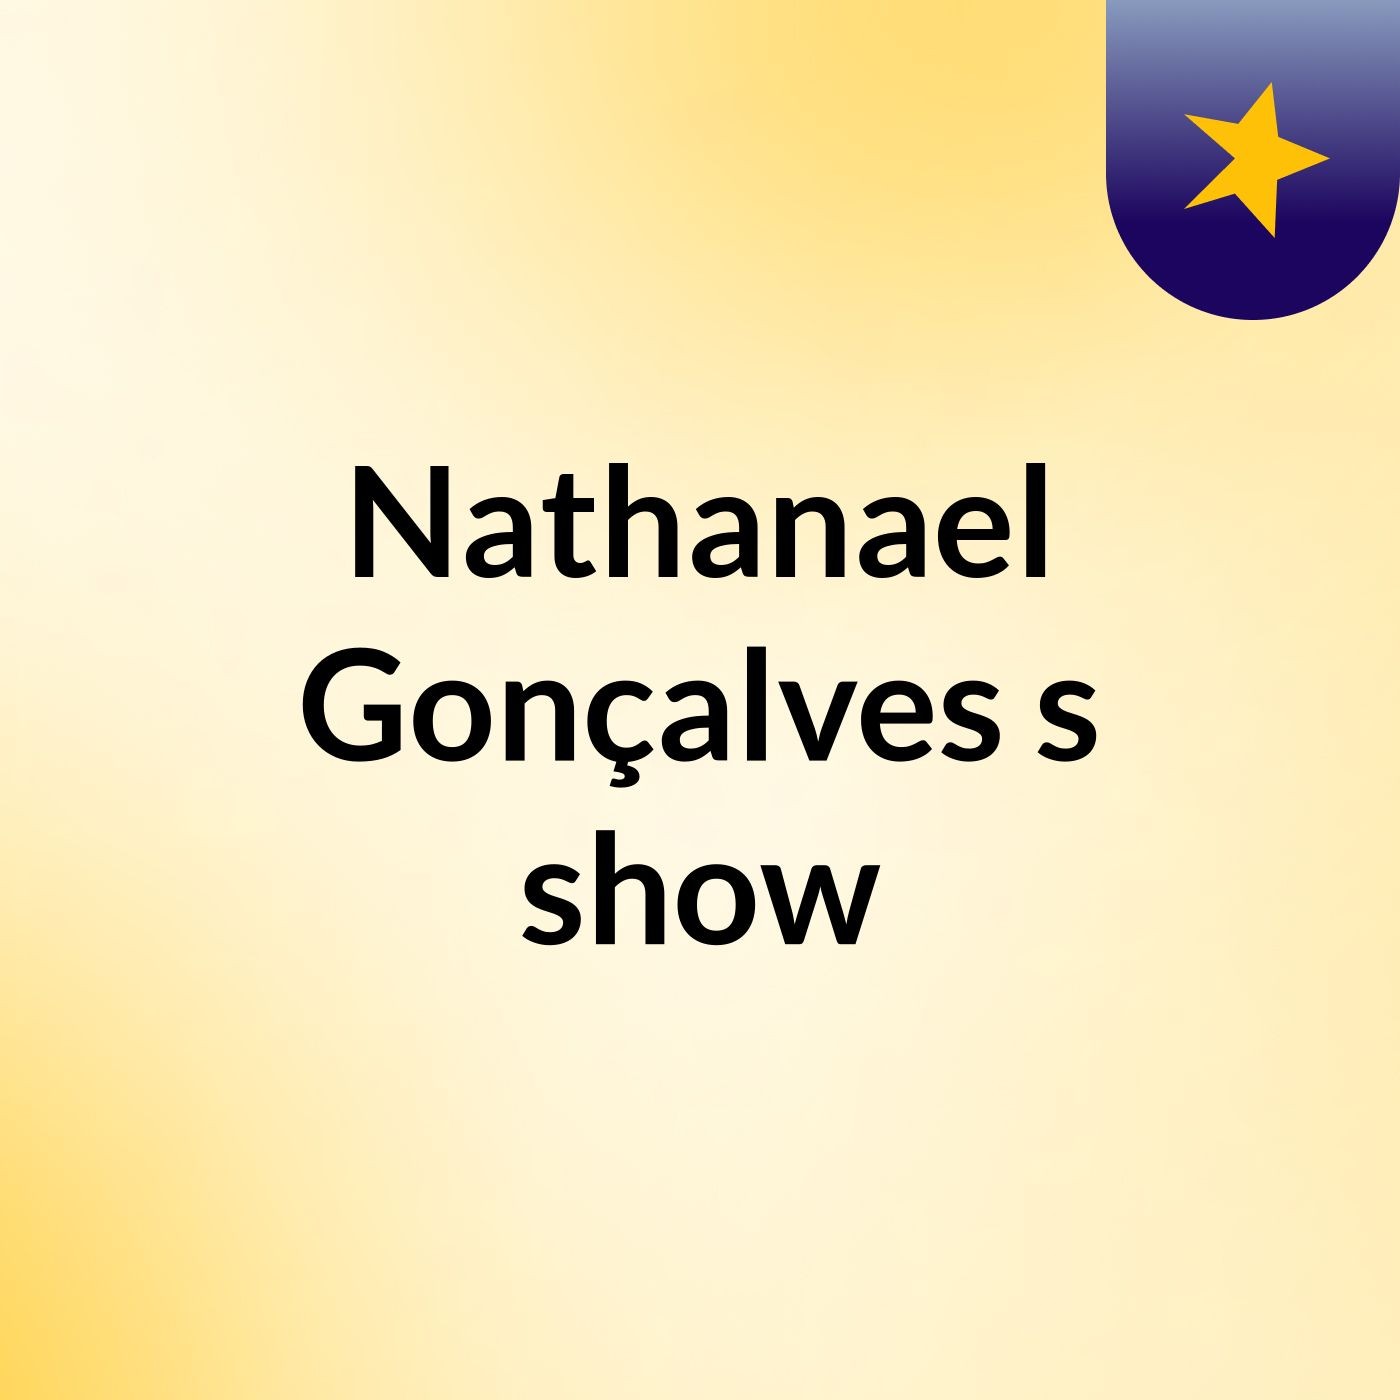 Nathanael Gonçalves's show